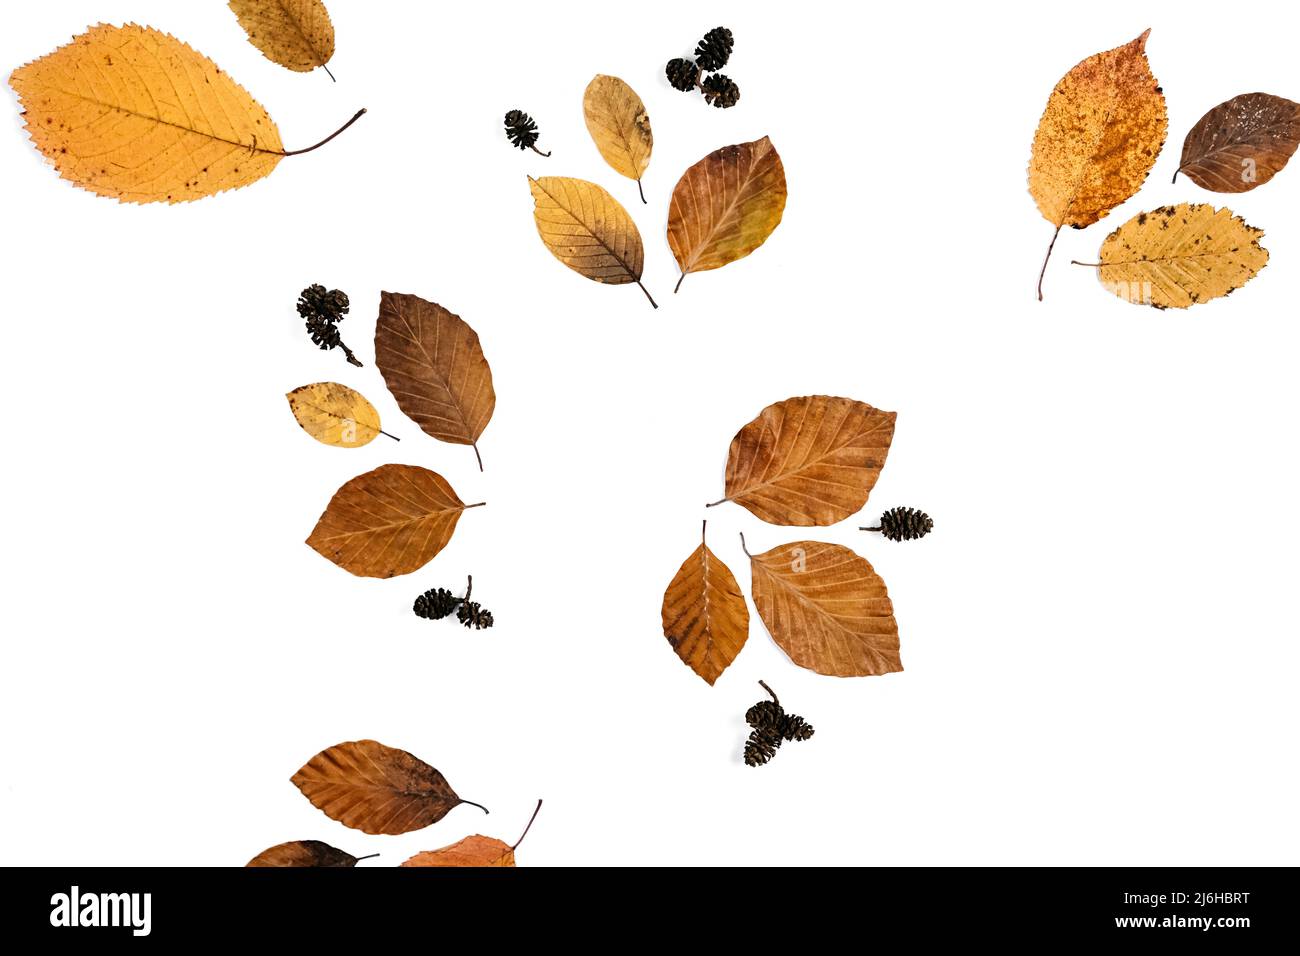 Herbst flach Lay Komposition mit trockenen Blättern auf Papier weißen Hintergrund Wand im Studio. Kreativer Herbst, Danksagewort, Herbst, halloween-Konzept. Draufsicht Stockfoto